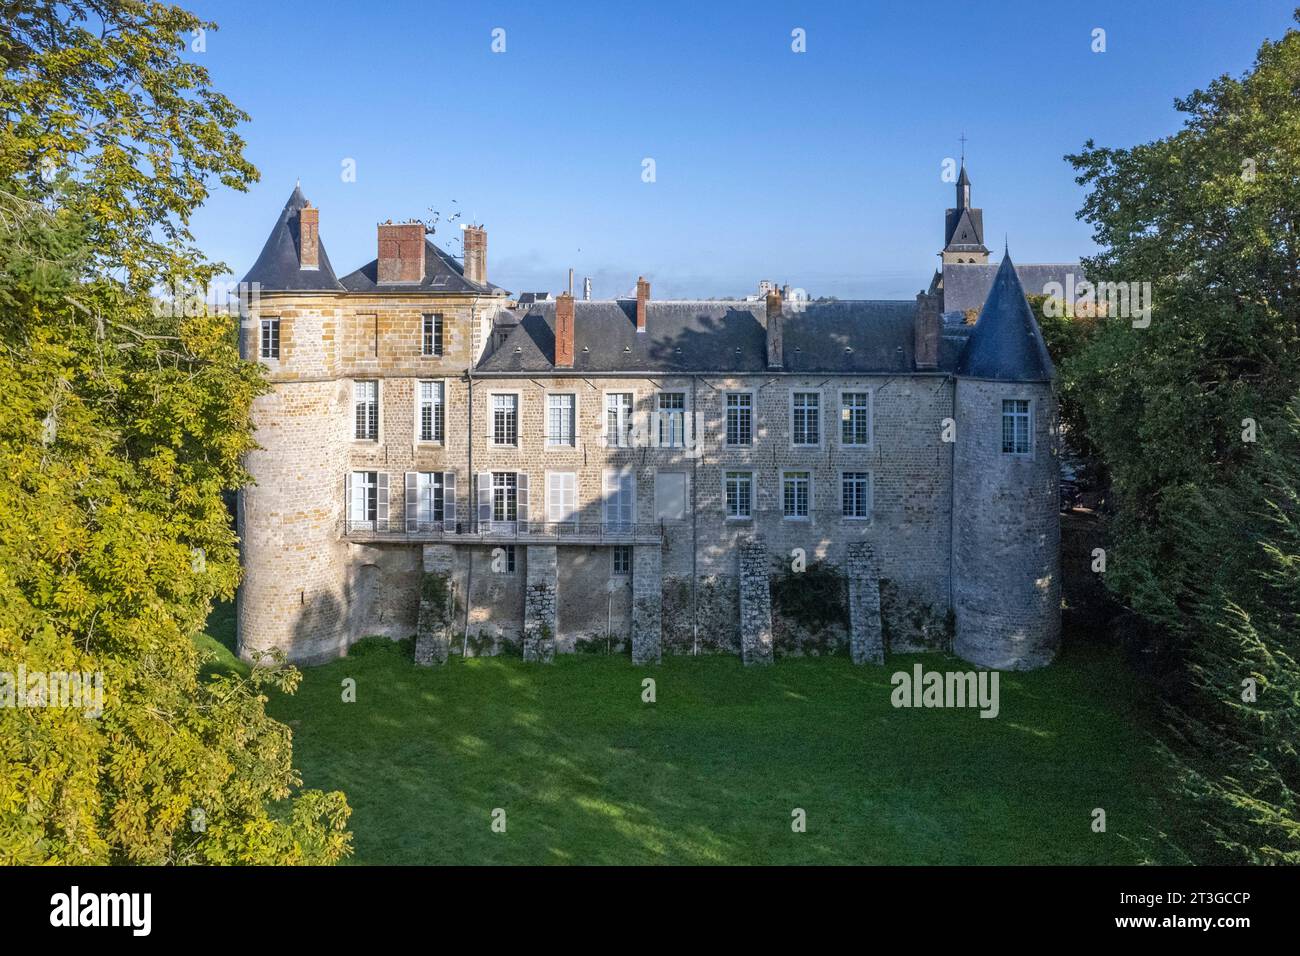 France, Seine-et-Marne (77), Nangis, Château de la Motte-Beauvoir or Beauvais (aerial view) Stock Photo